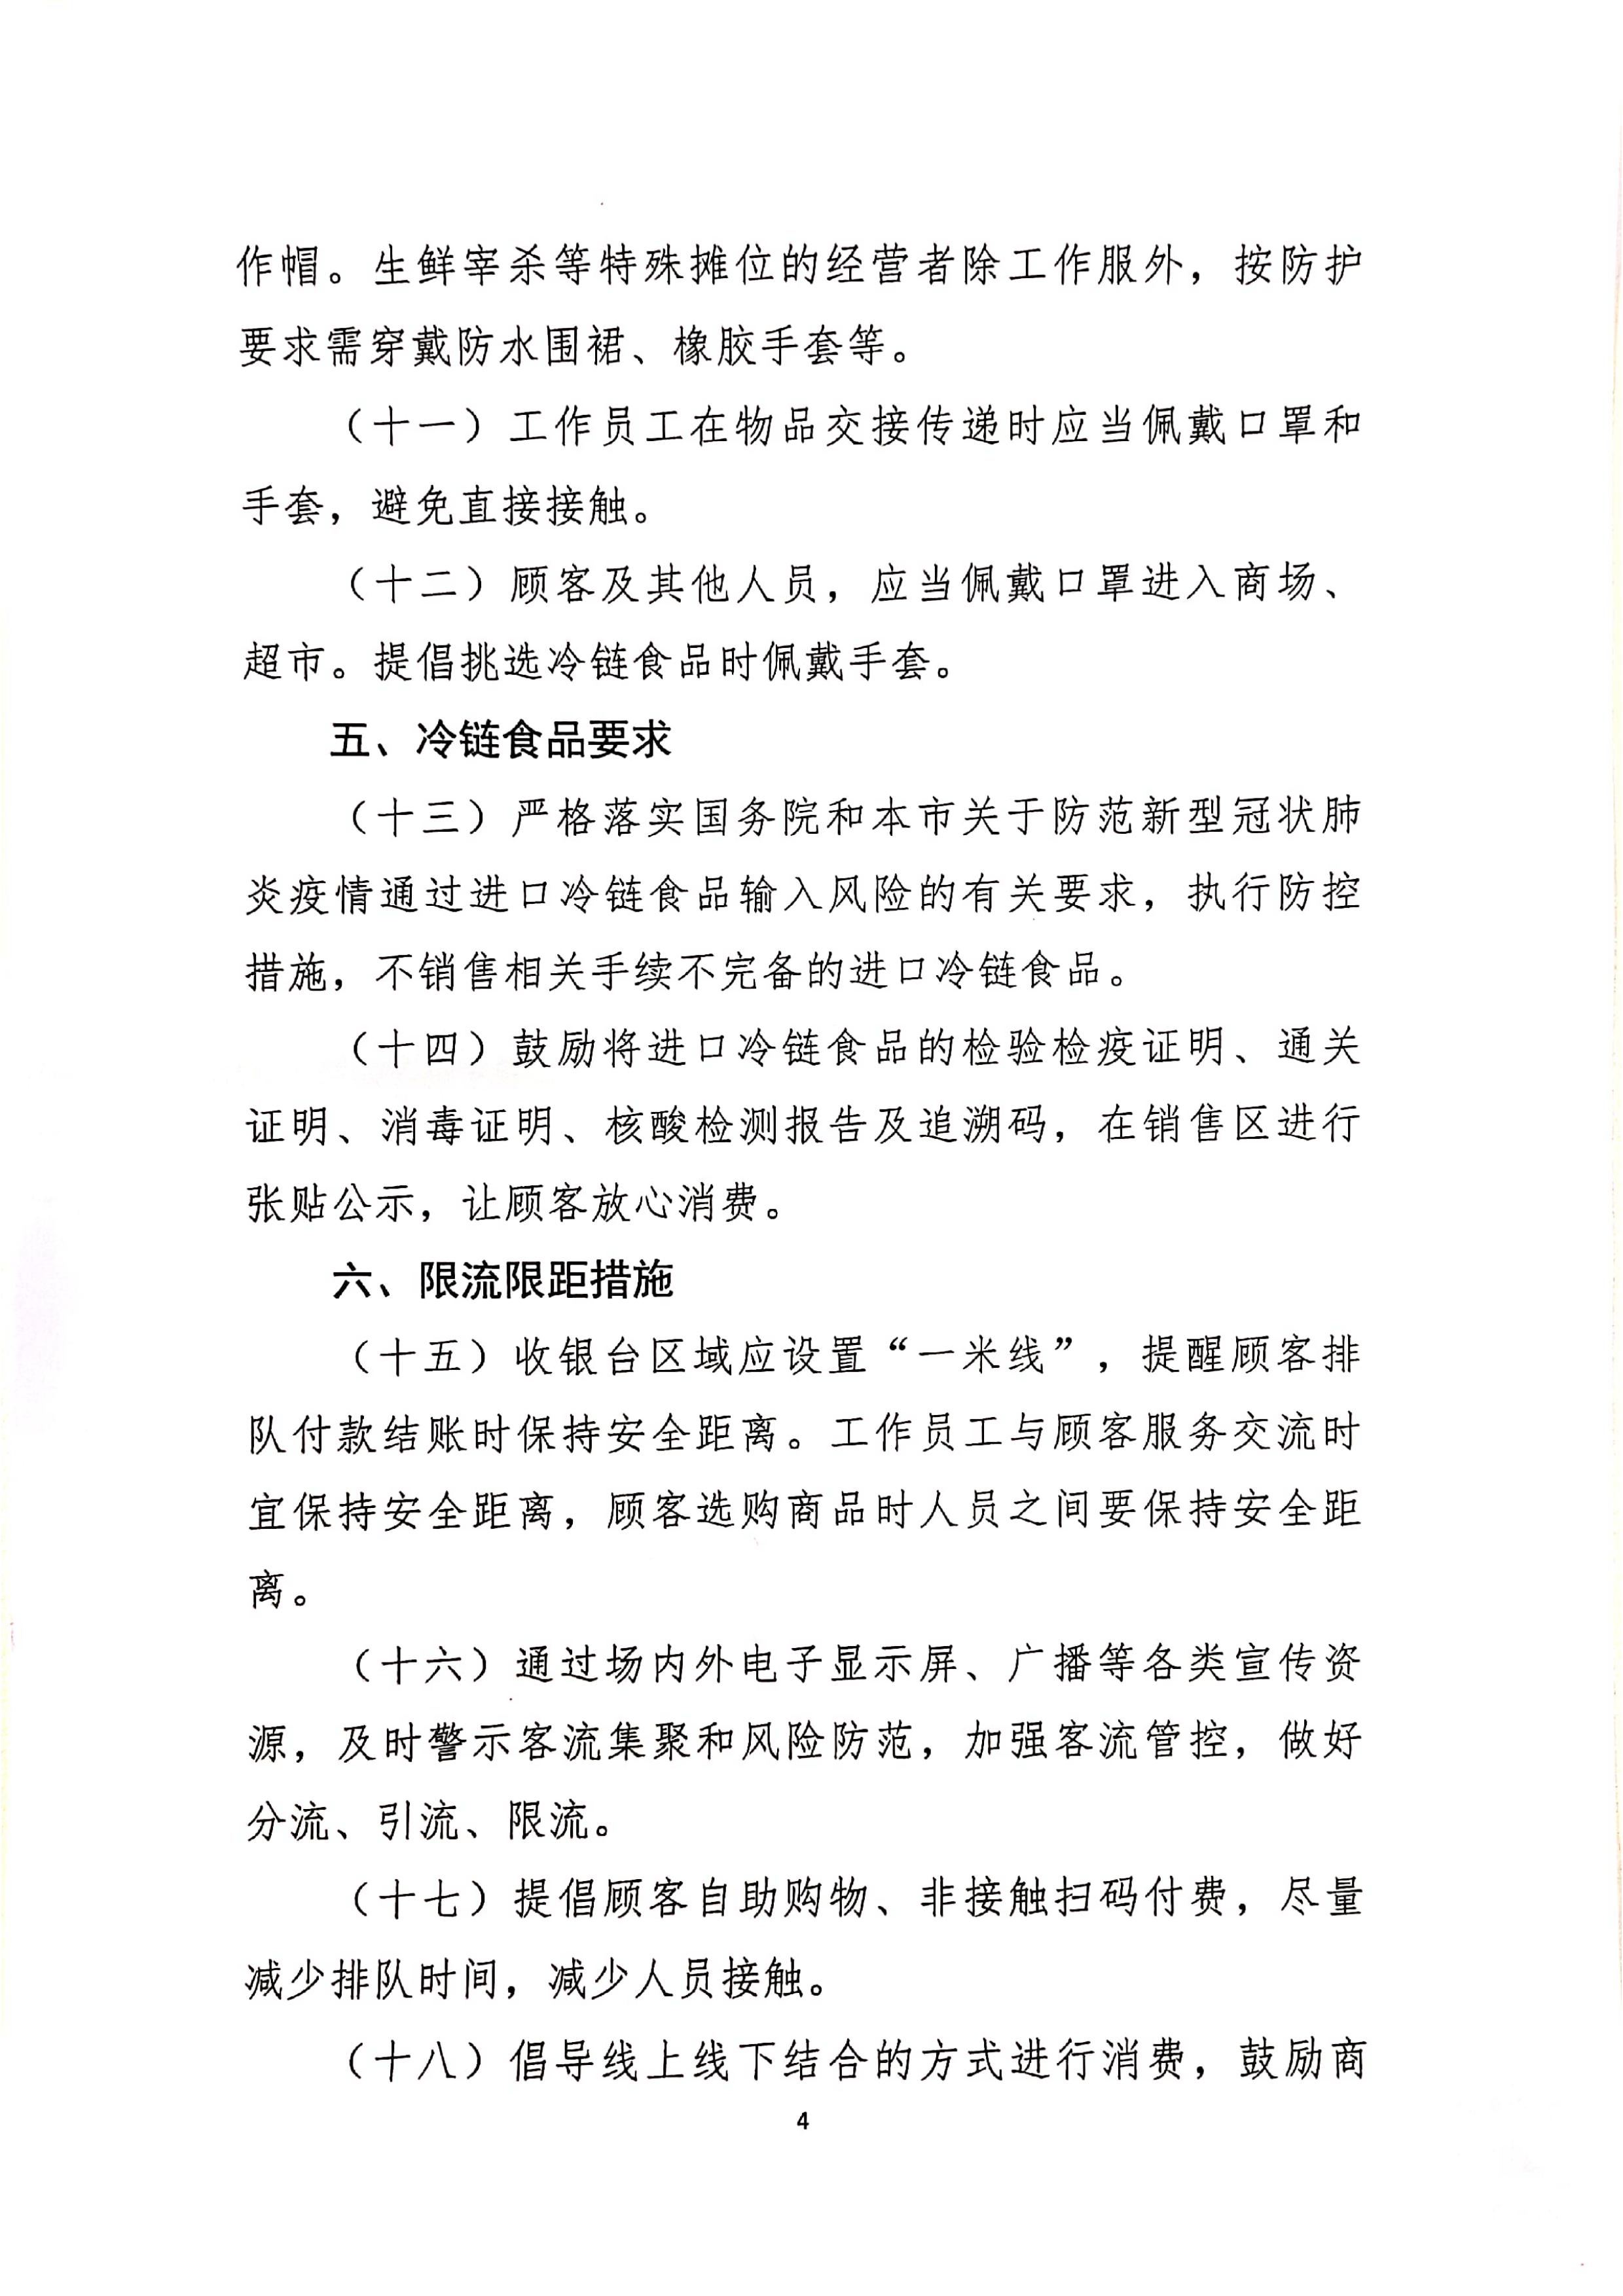 发文4号-关于印发《上海市商场、超市疫情防控技术指南》等4个指南的通知_04.jpg